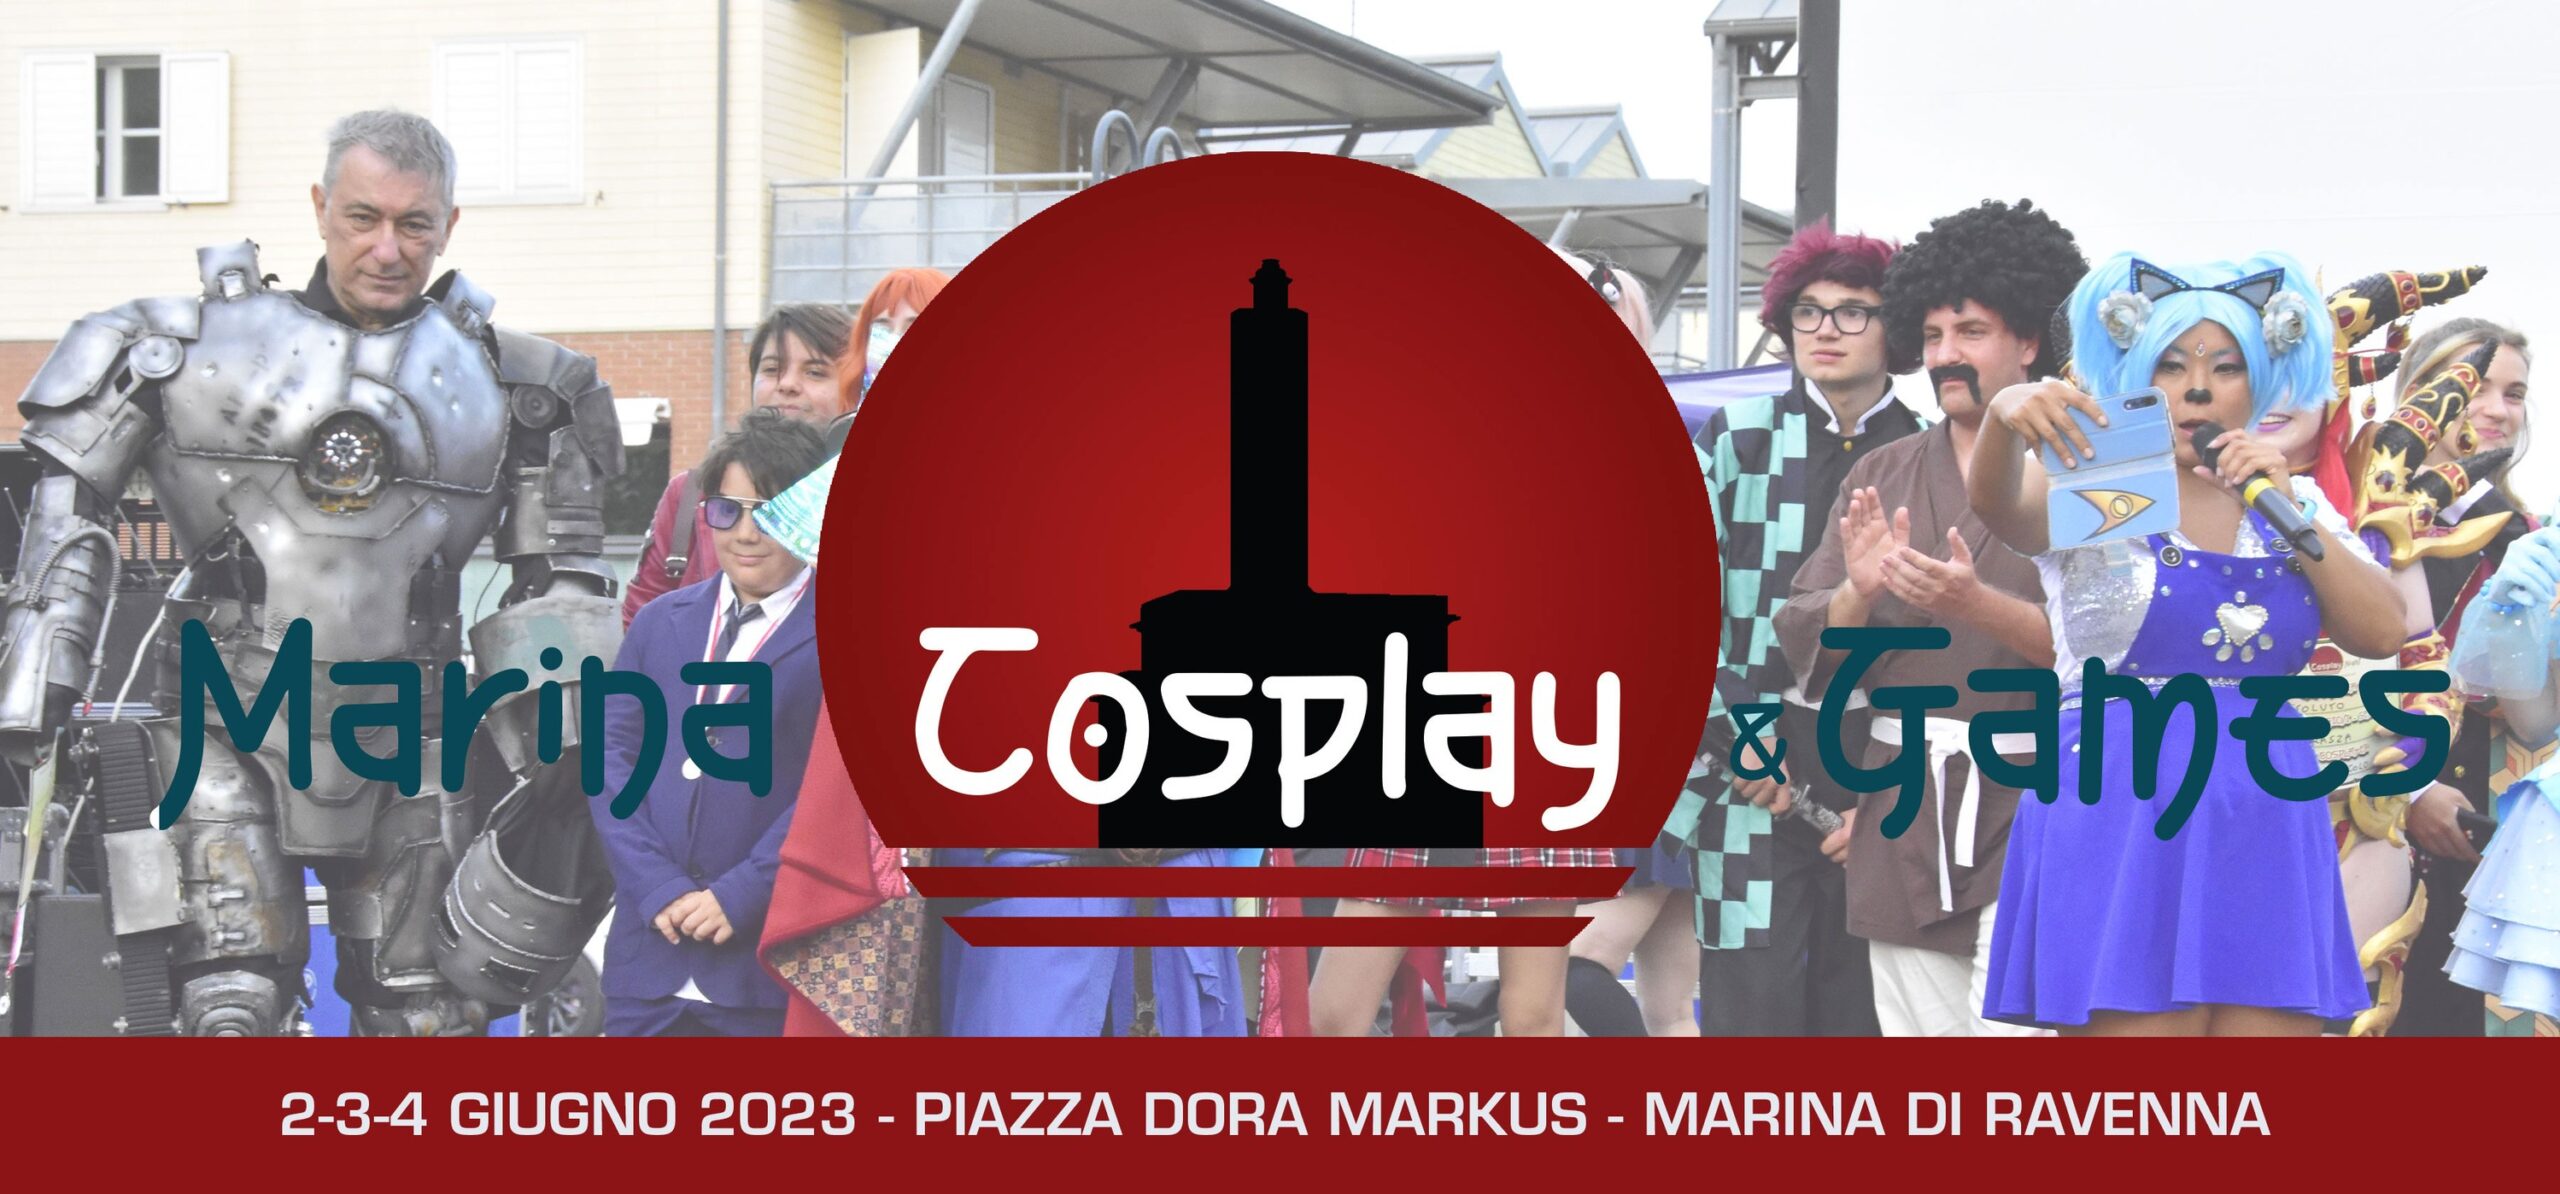 La II edizione di “Marina Cosplay & Games” dal 2 al 4 giugno 2023